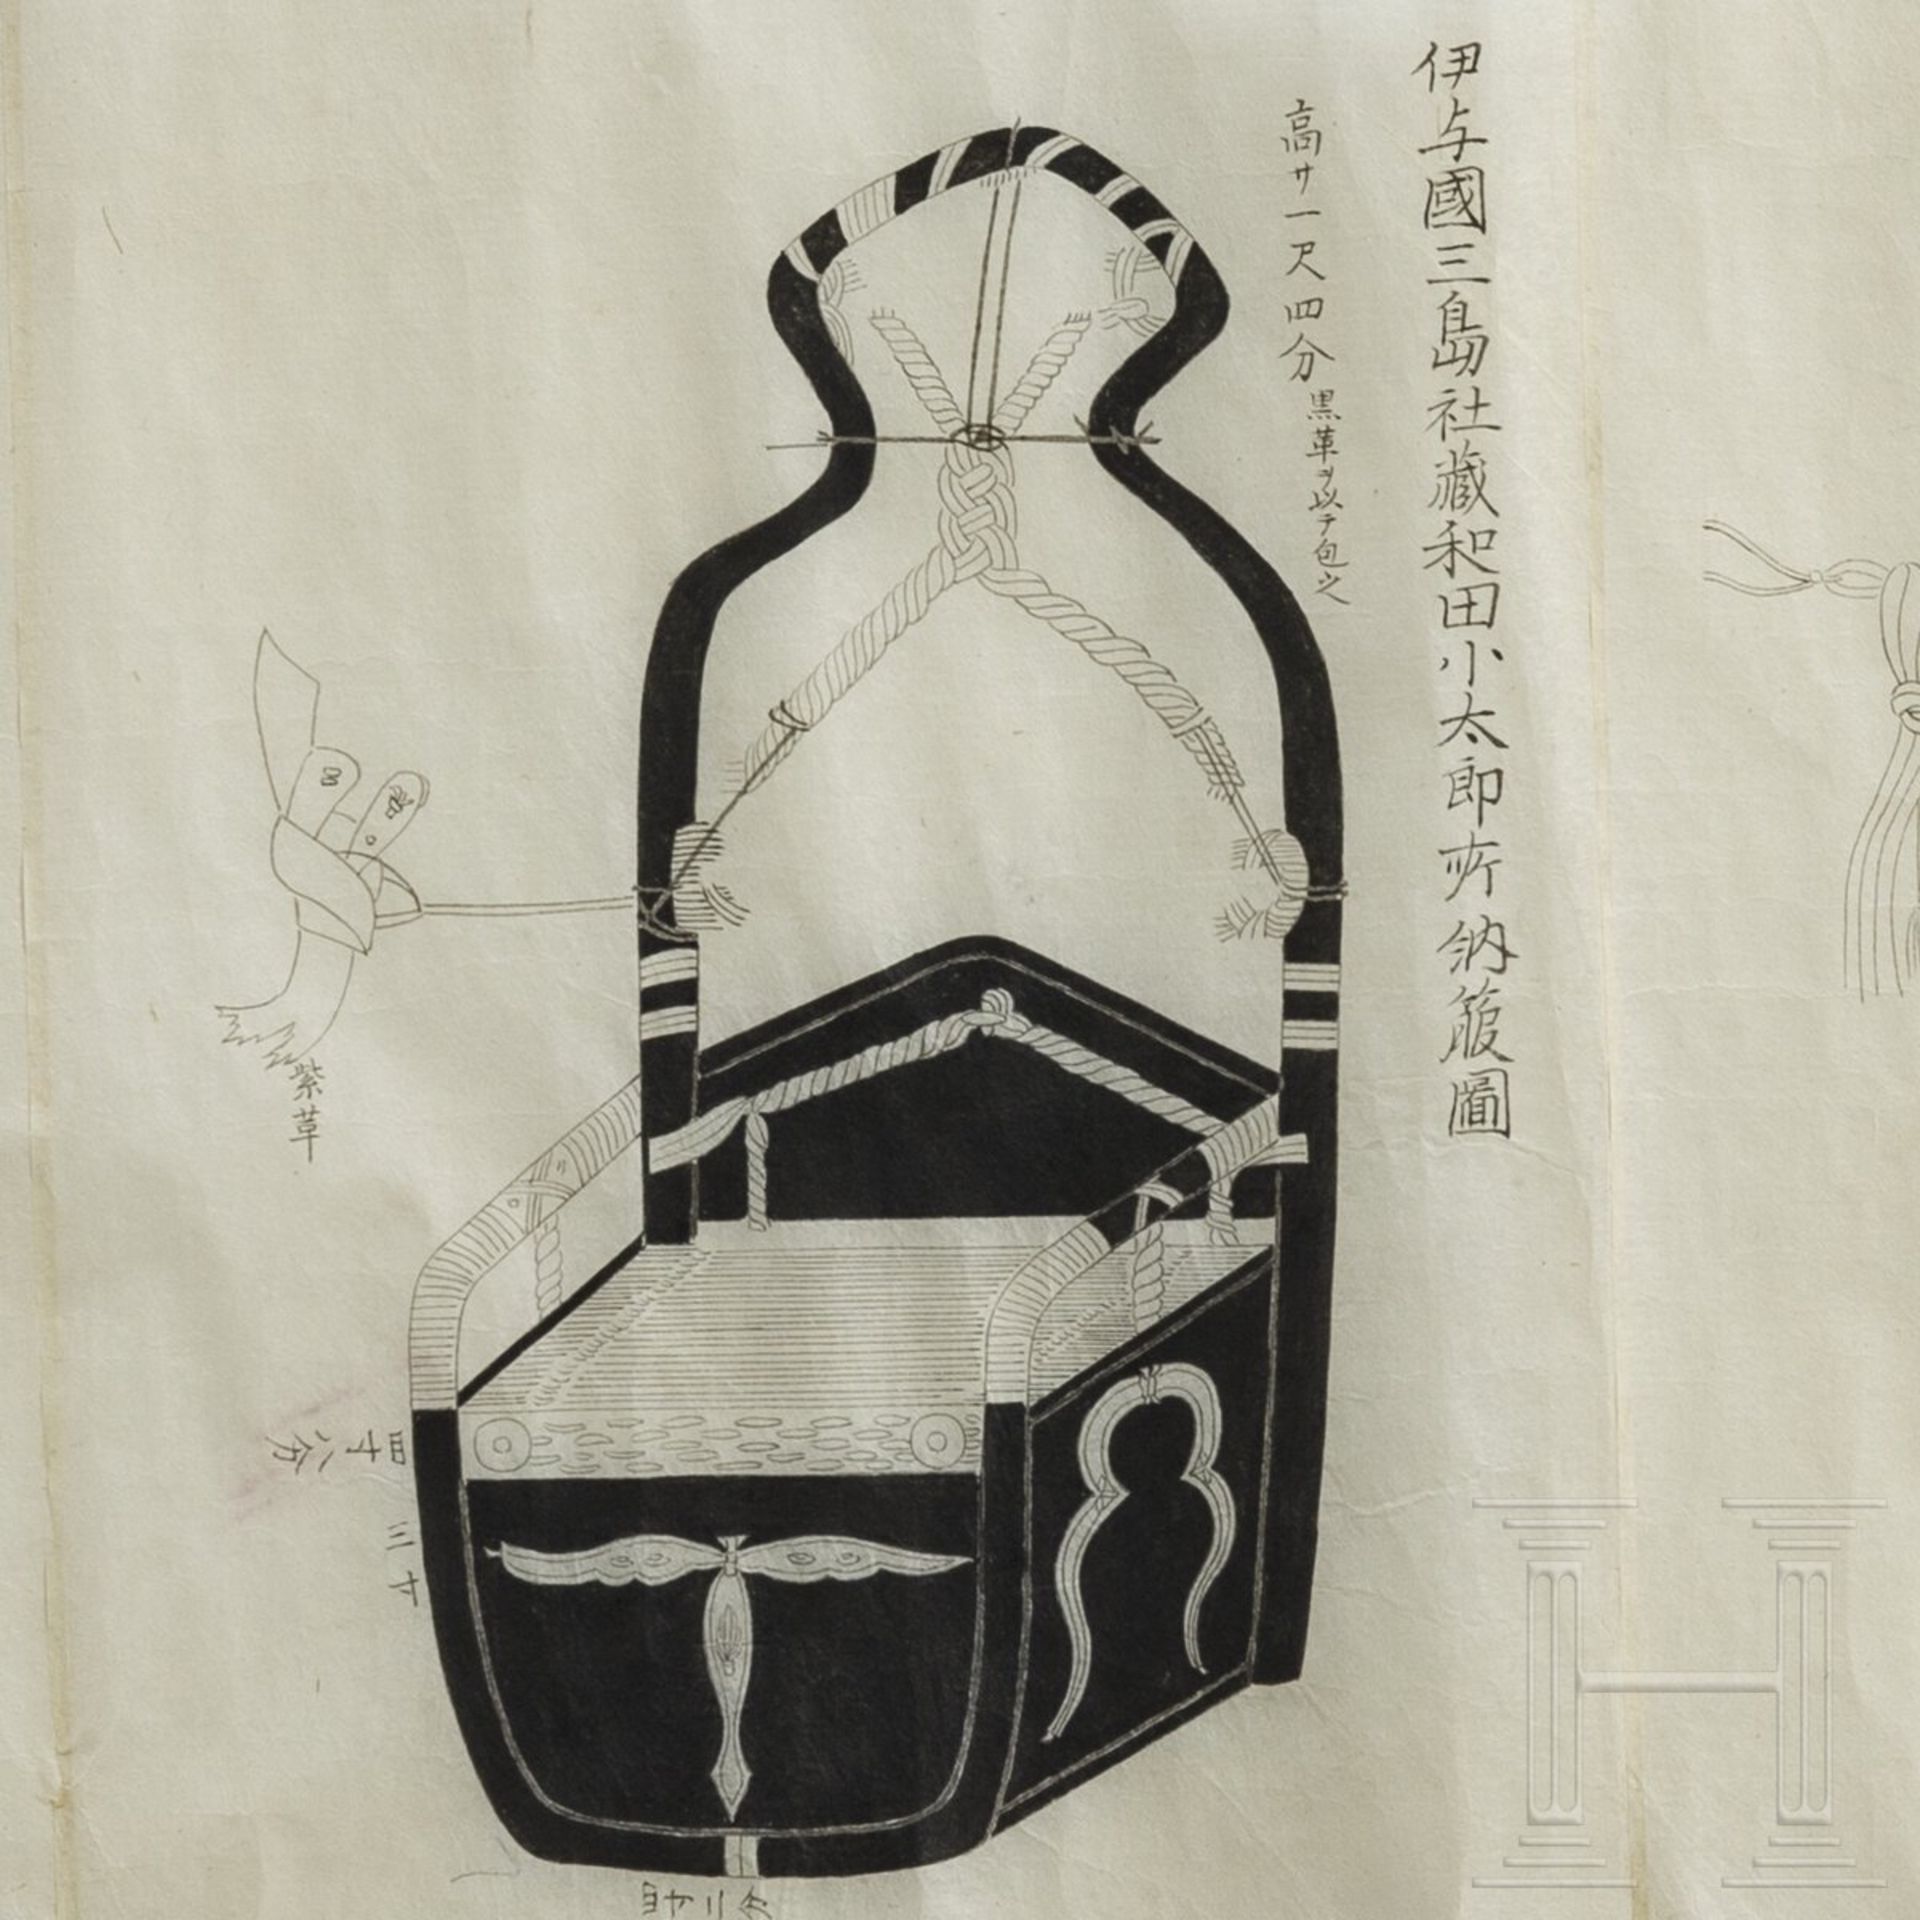 Bildrolle zum Thema Bogenschießen, Japan, Ende Edo-Periode - Image 8 of 9